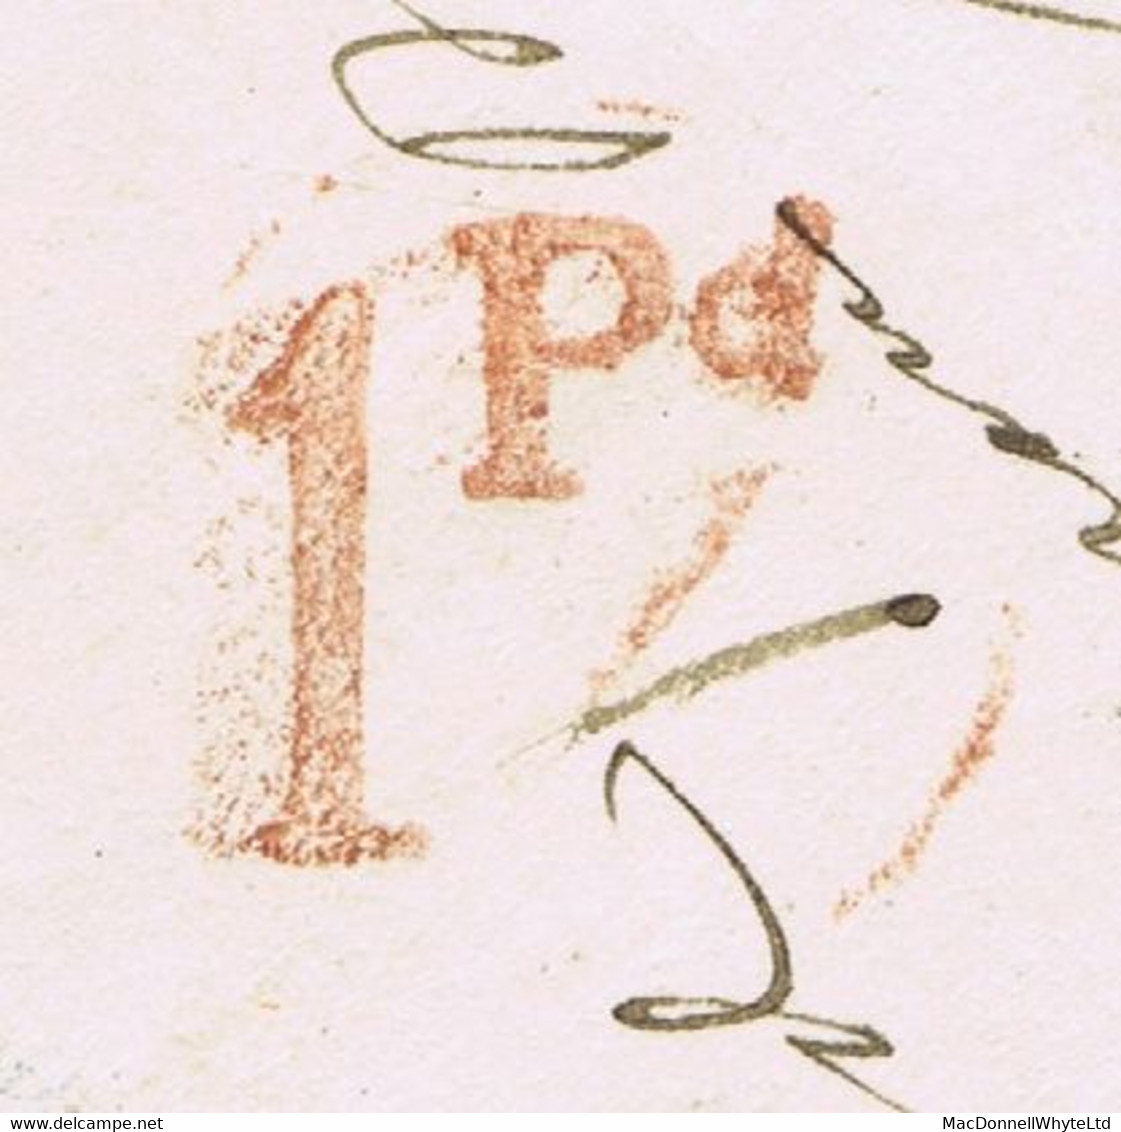 Ireland Louth Uniform Penny Post 1849 Distinctive Dundalk "1Pd" UPP Hs In Red On Cover To Drogheda, DUNDALK AU 25 1849 - Préphilatélie